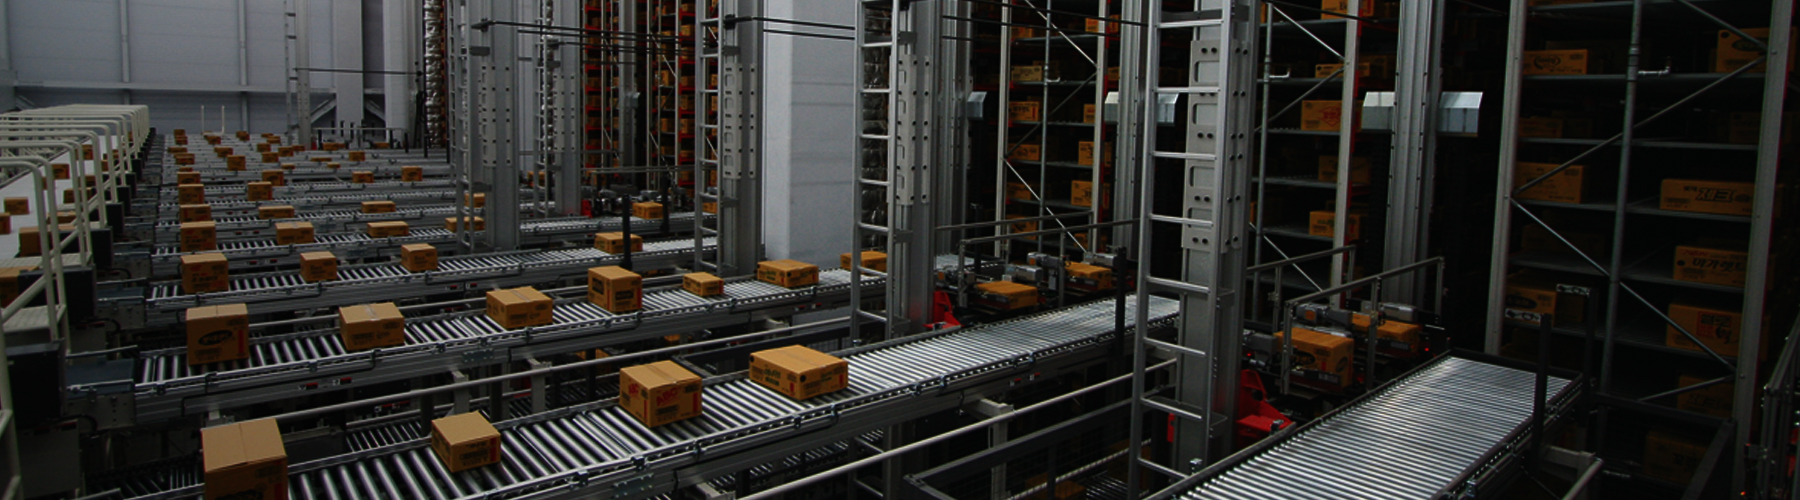 Craftsman Storage System